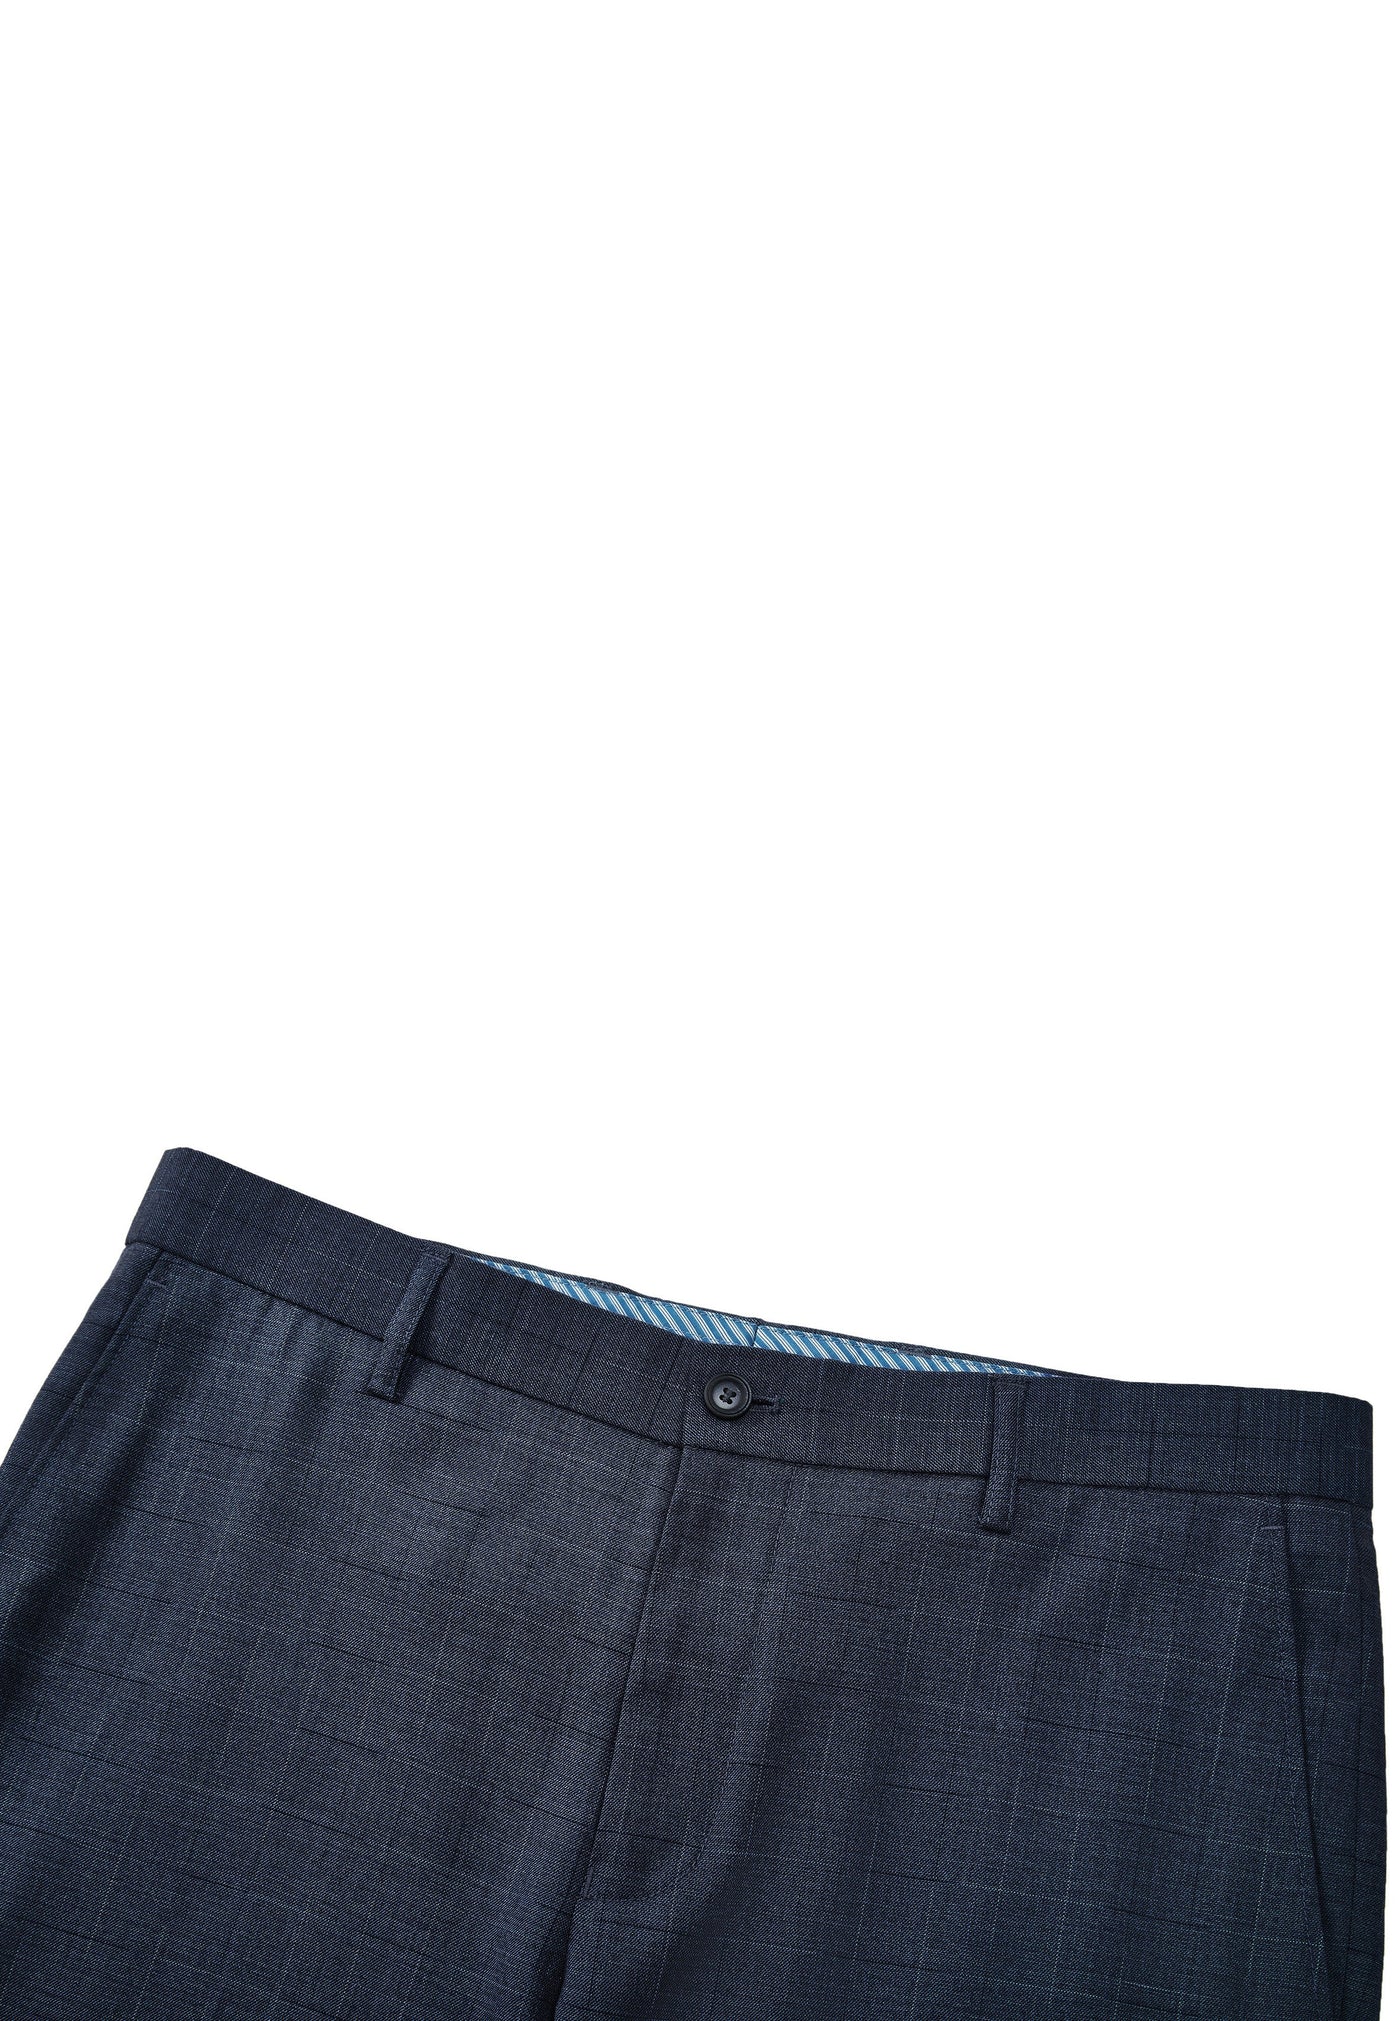 Men Clothing 3M Check Multi-Way Stretch Suit Pants Slim Fit